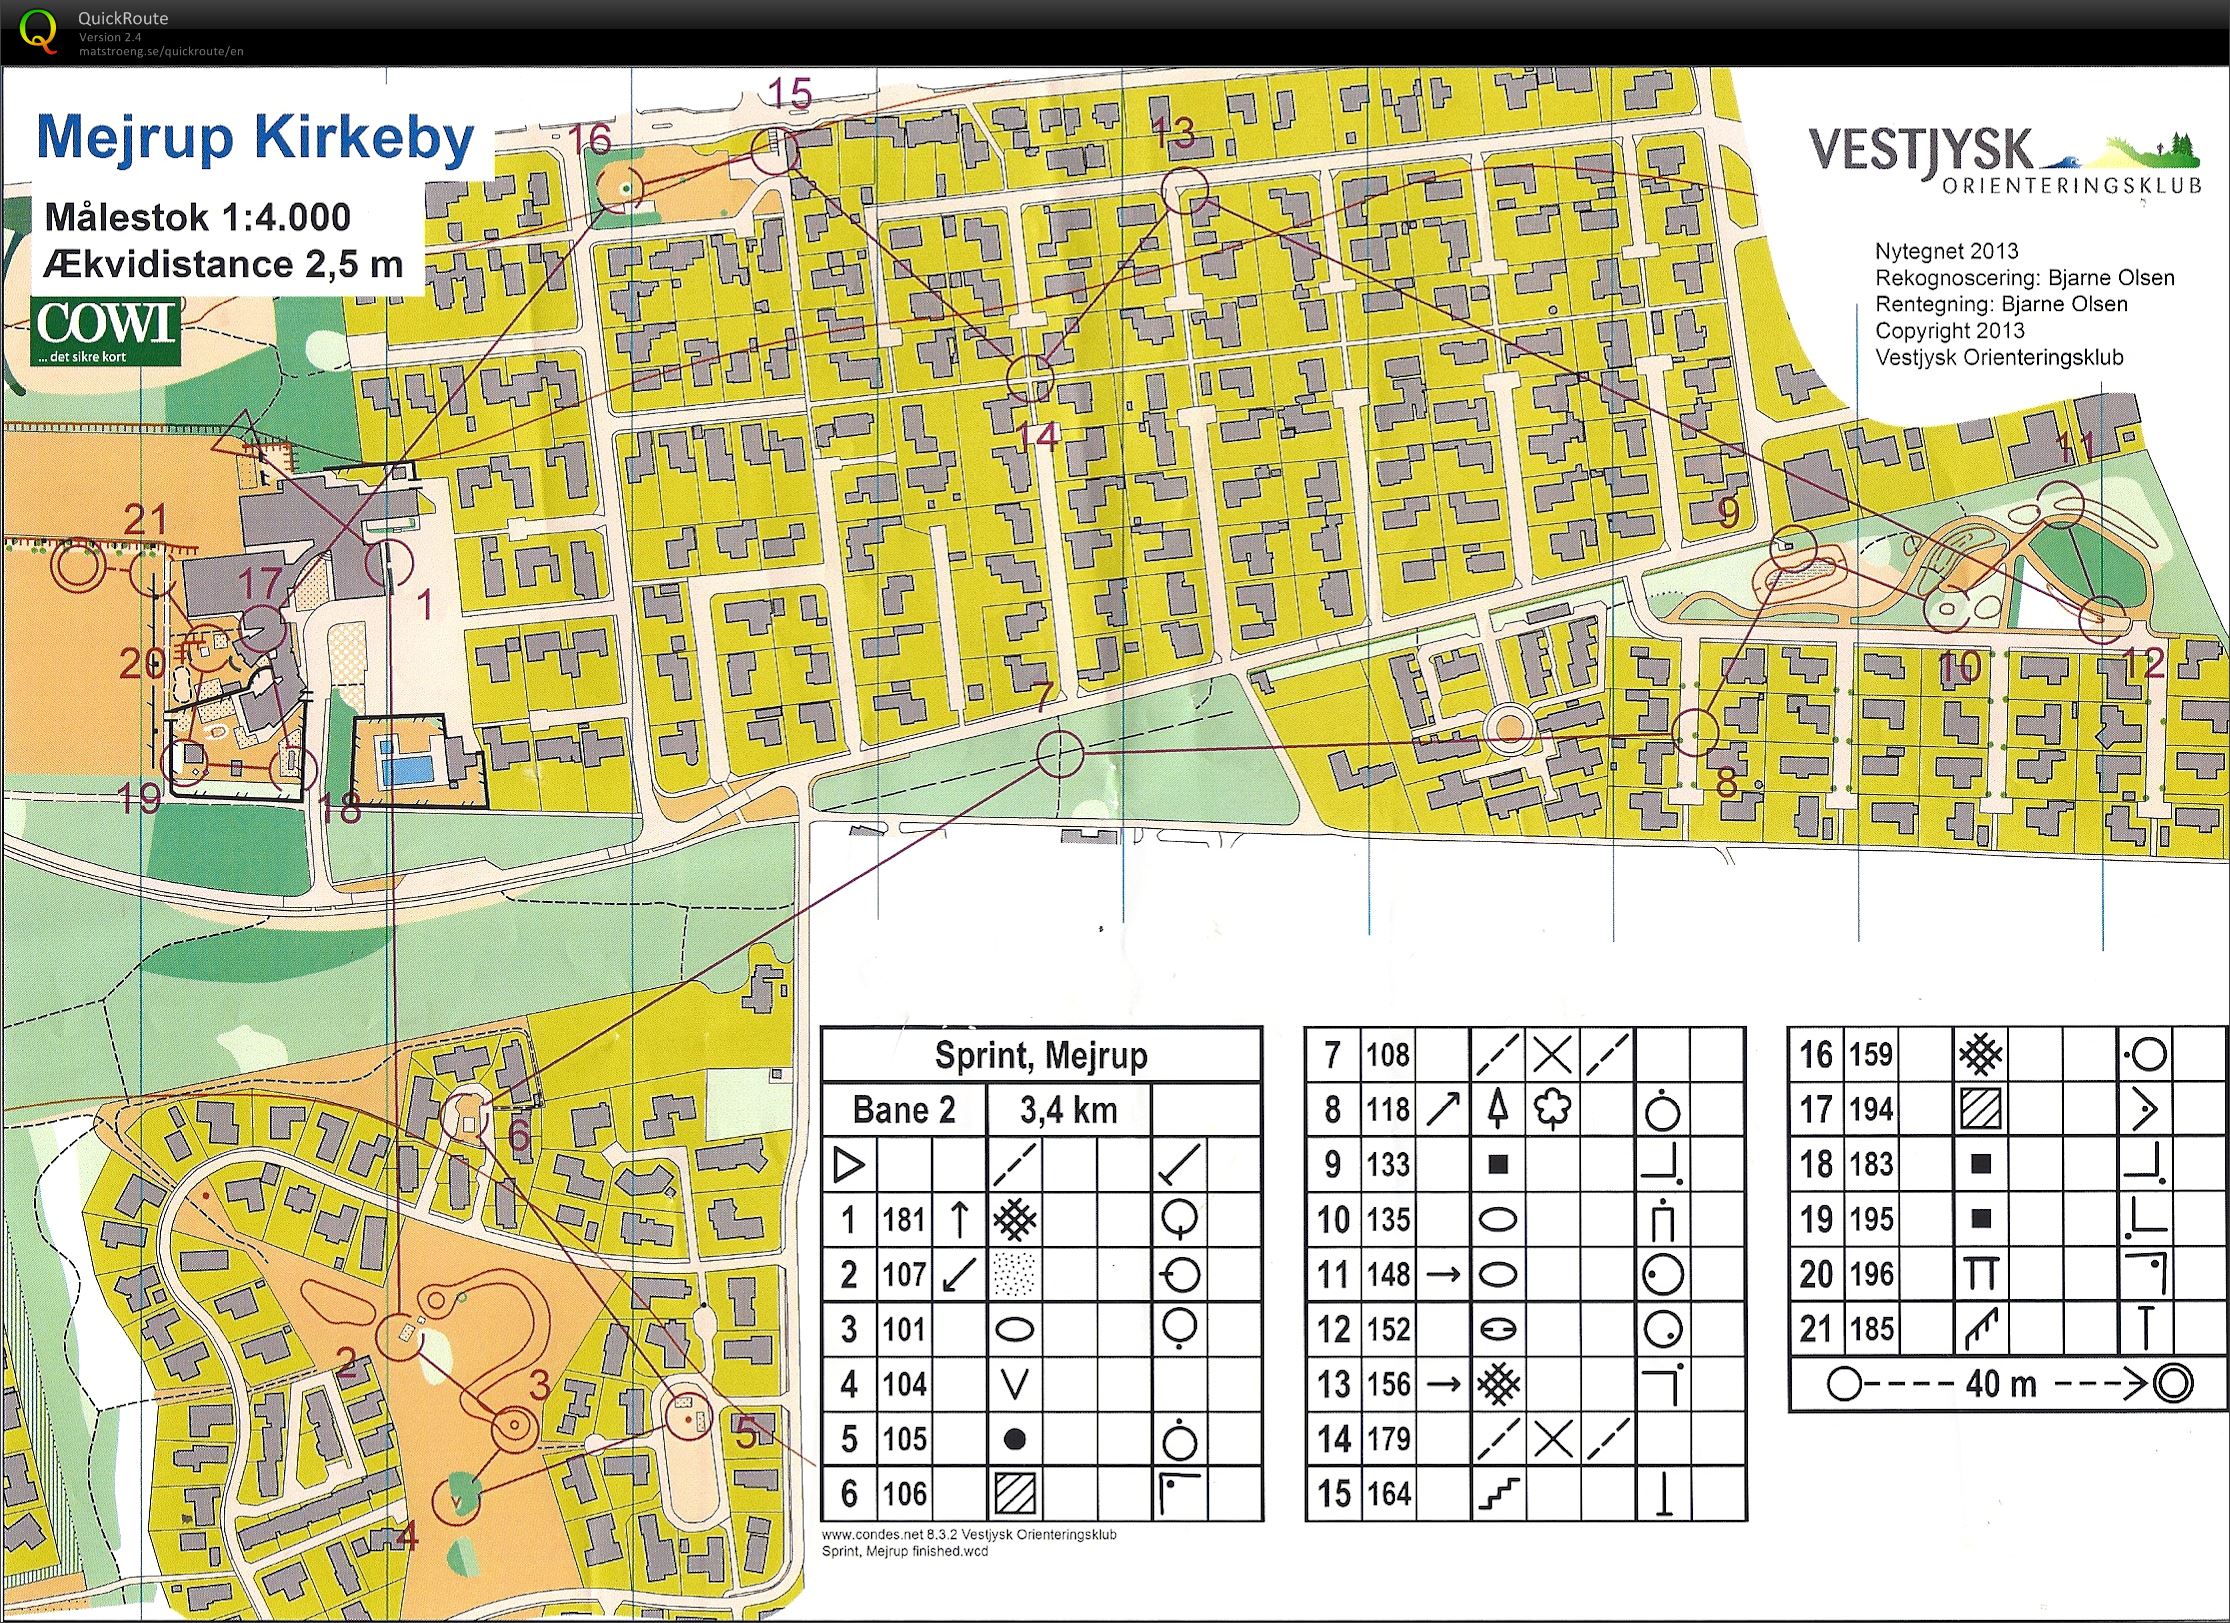 Vestjysk 2 dages 2013 sprint (2013-06-28)